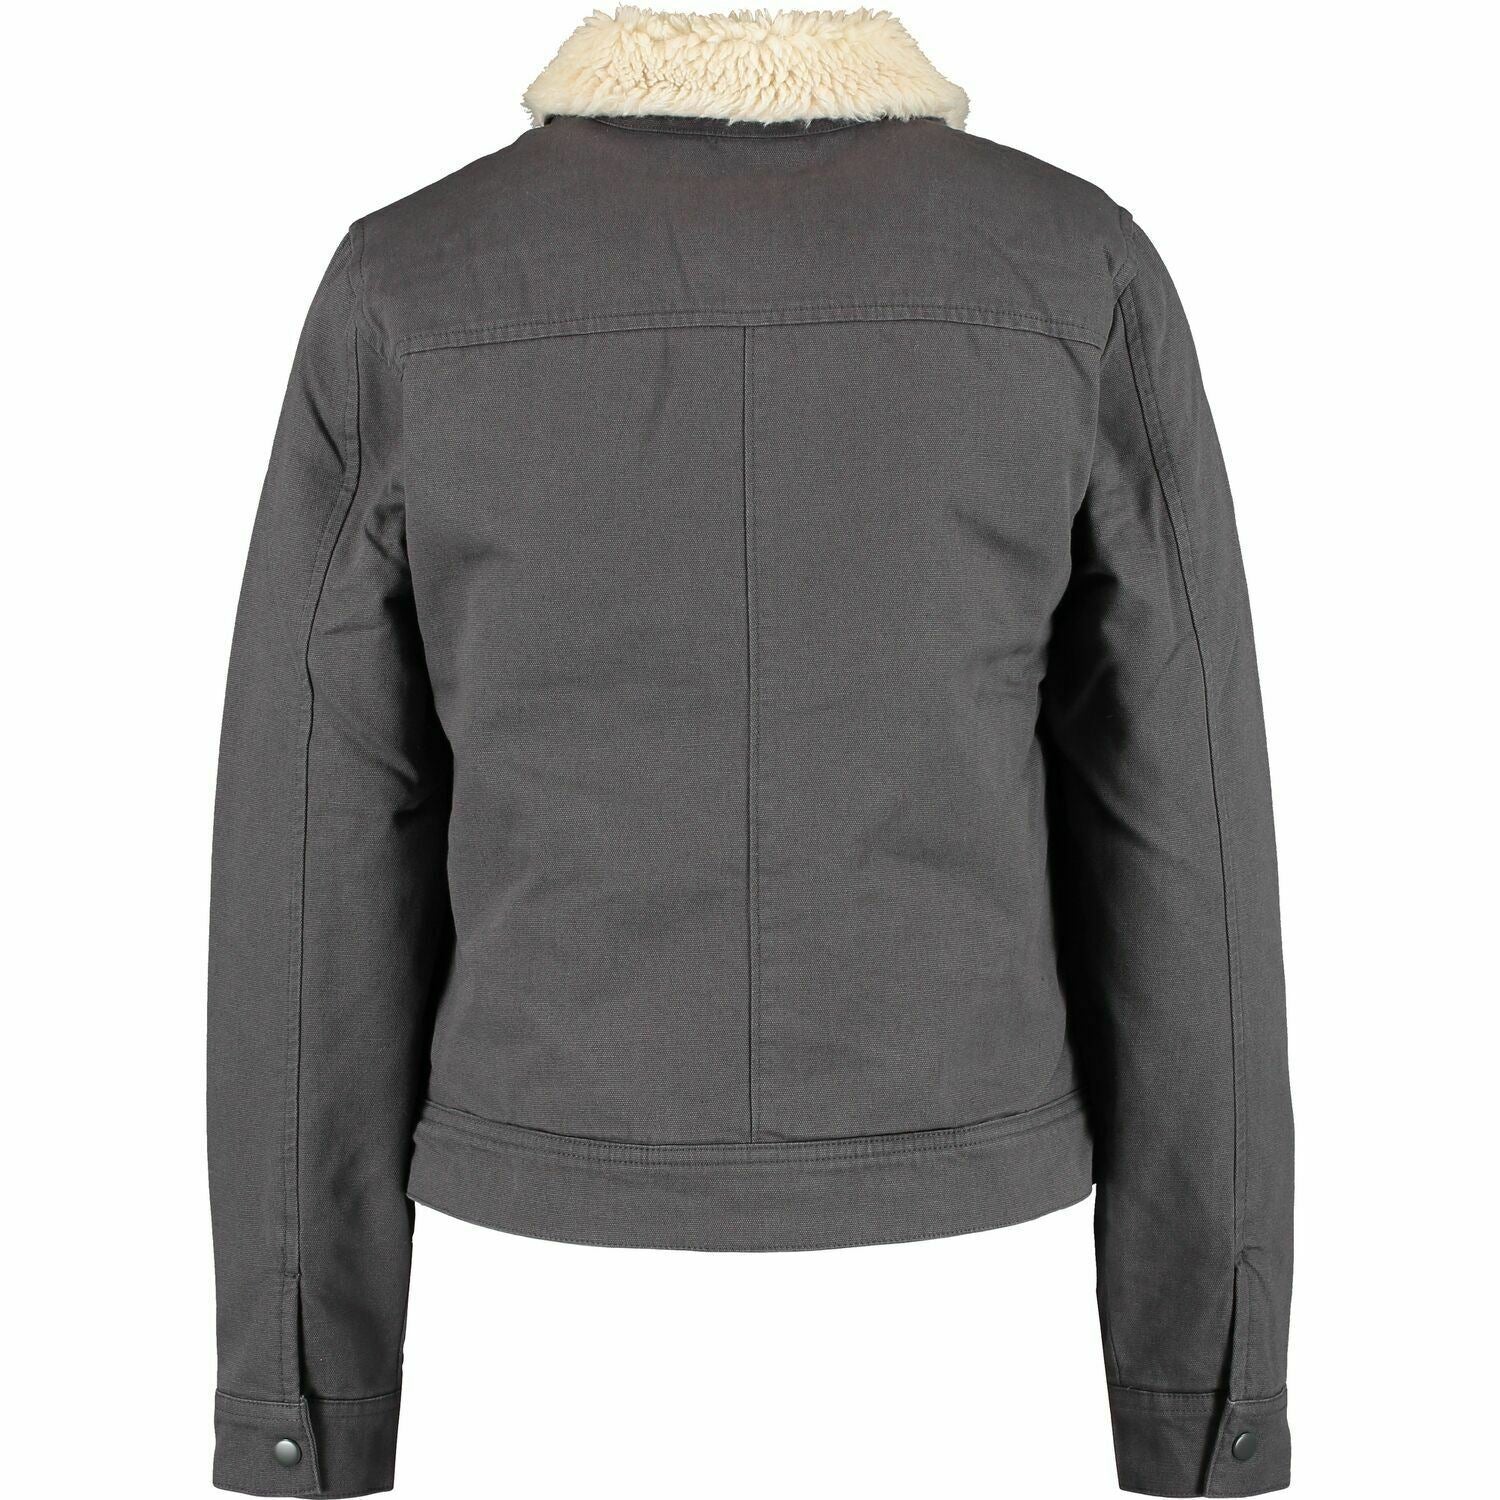 VANS Women's 'OIL CHANGE JACK' Grey Shearling Lined Jacket, size XS